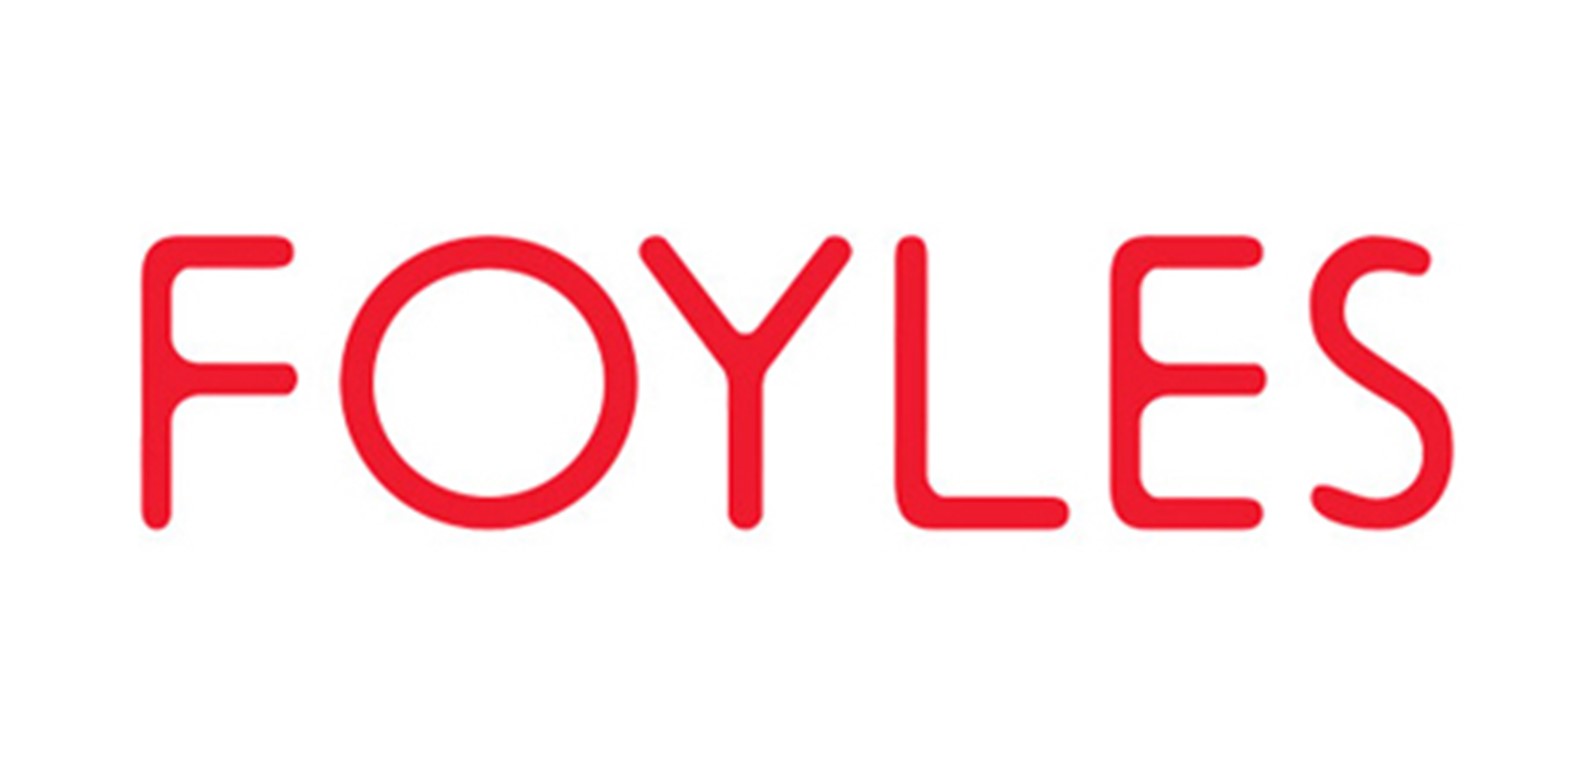 Foyles (W G Foyle Ltd) London Waterloo Station